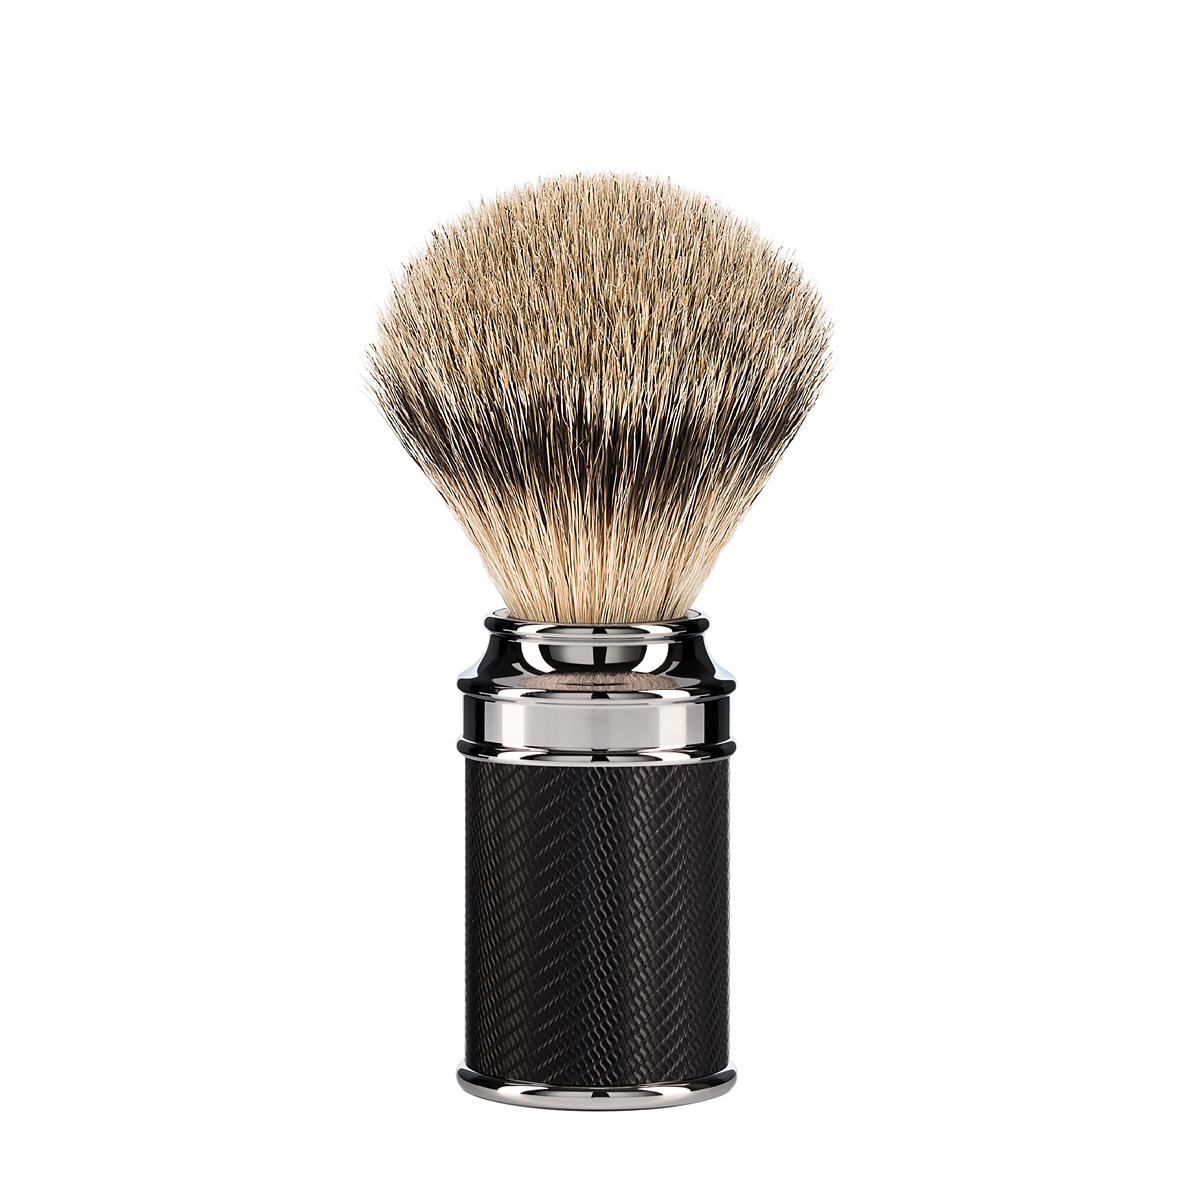 MUHLE Black and Chrome Silvertip Badger Shaving Brush